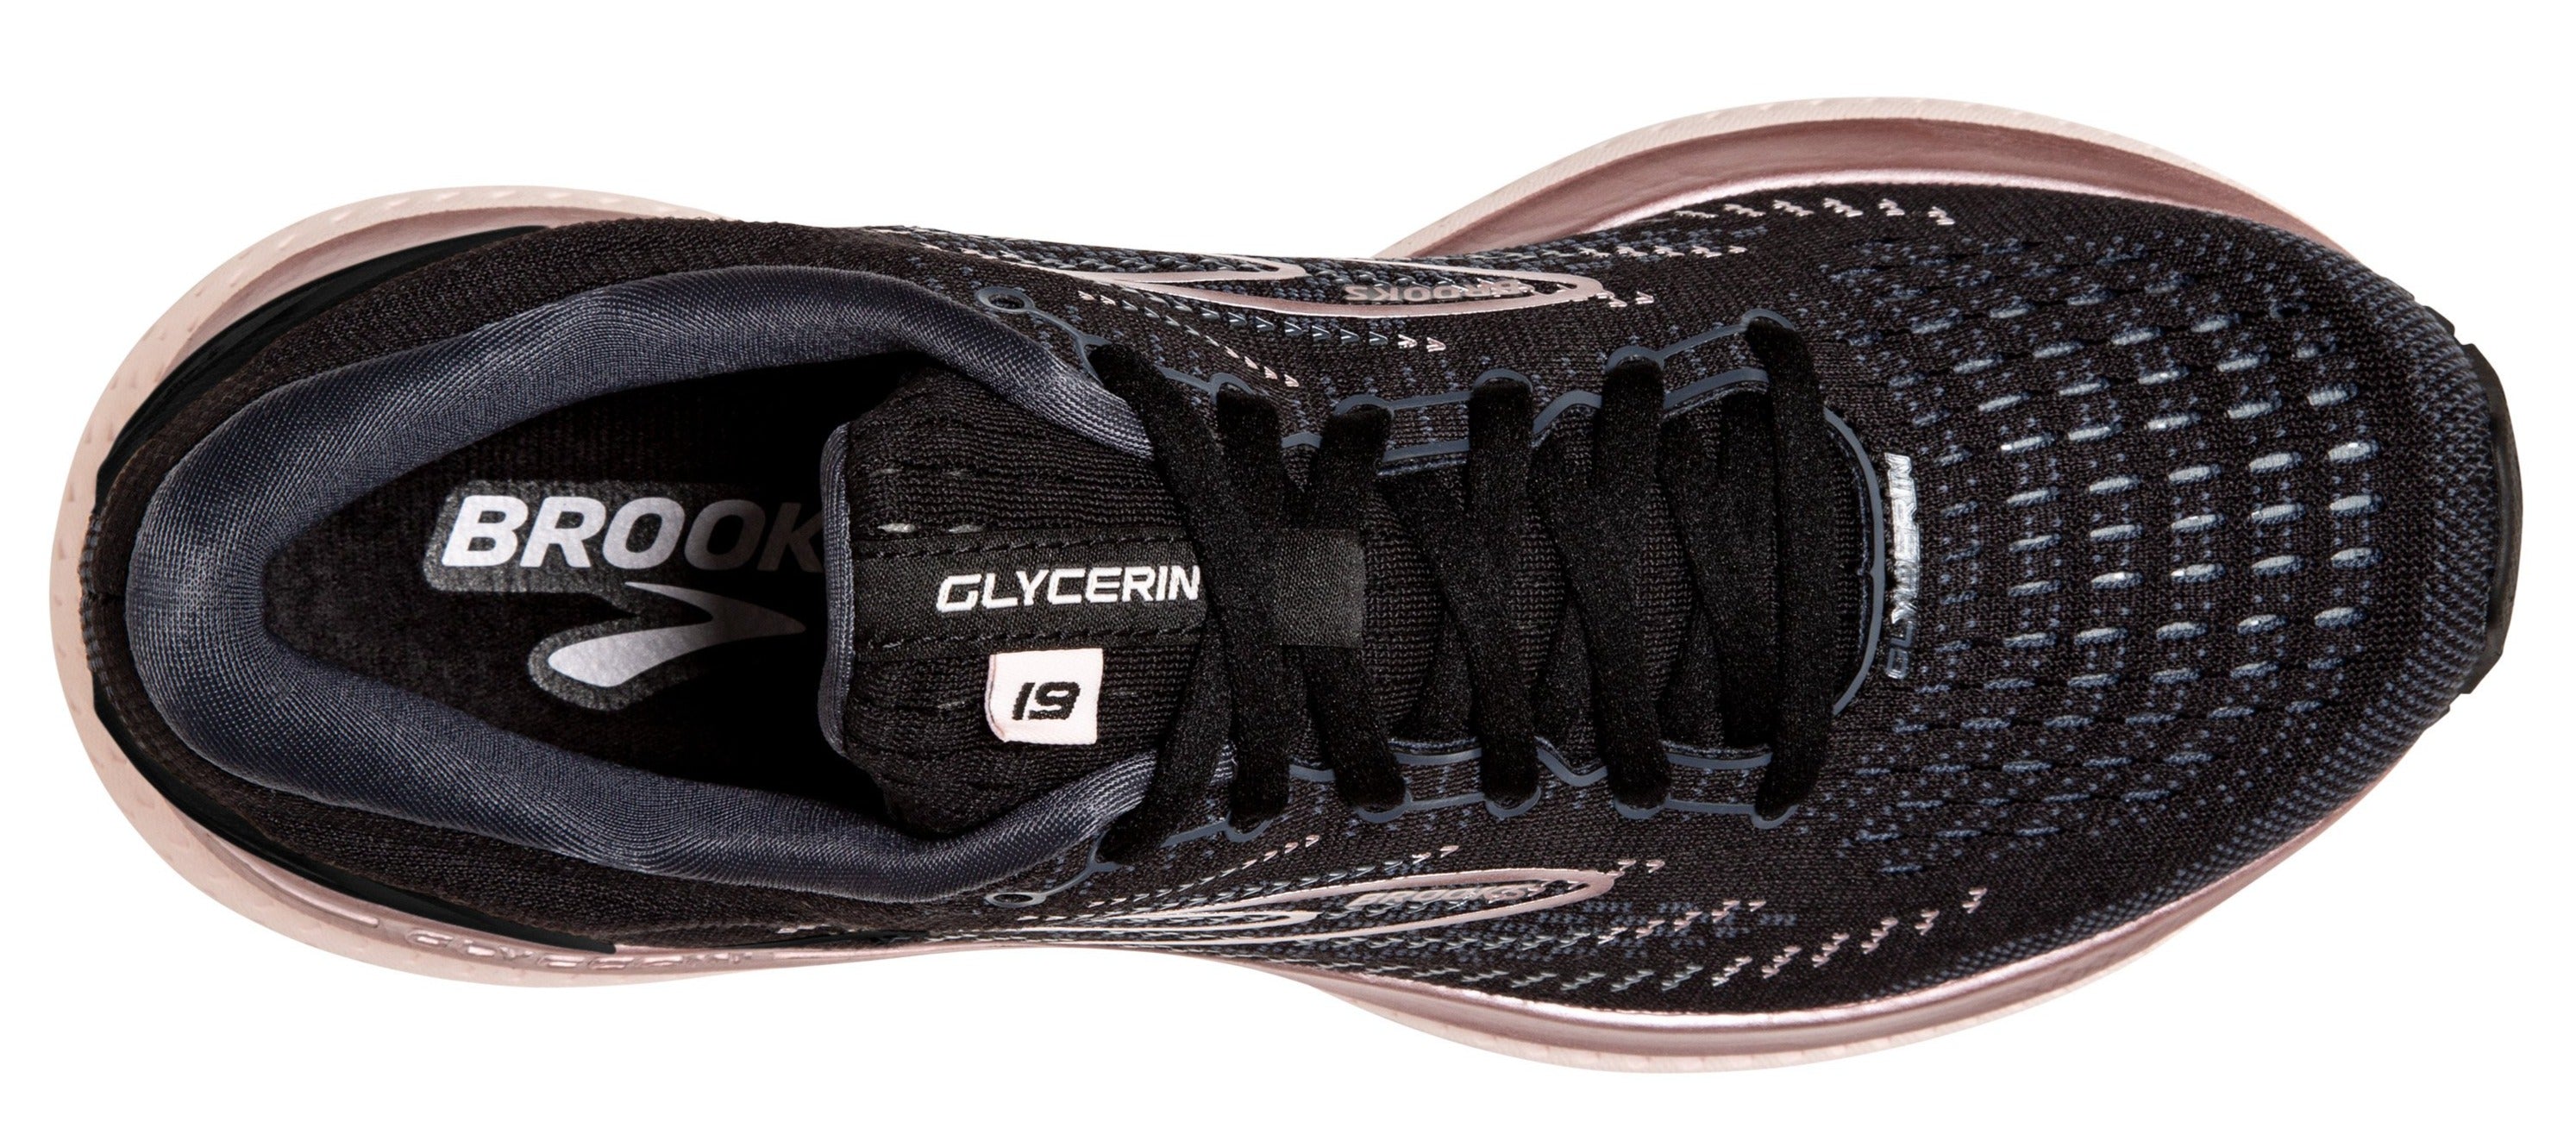 W Brooks Glycerin 19 – Frontrunners Footwear